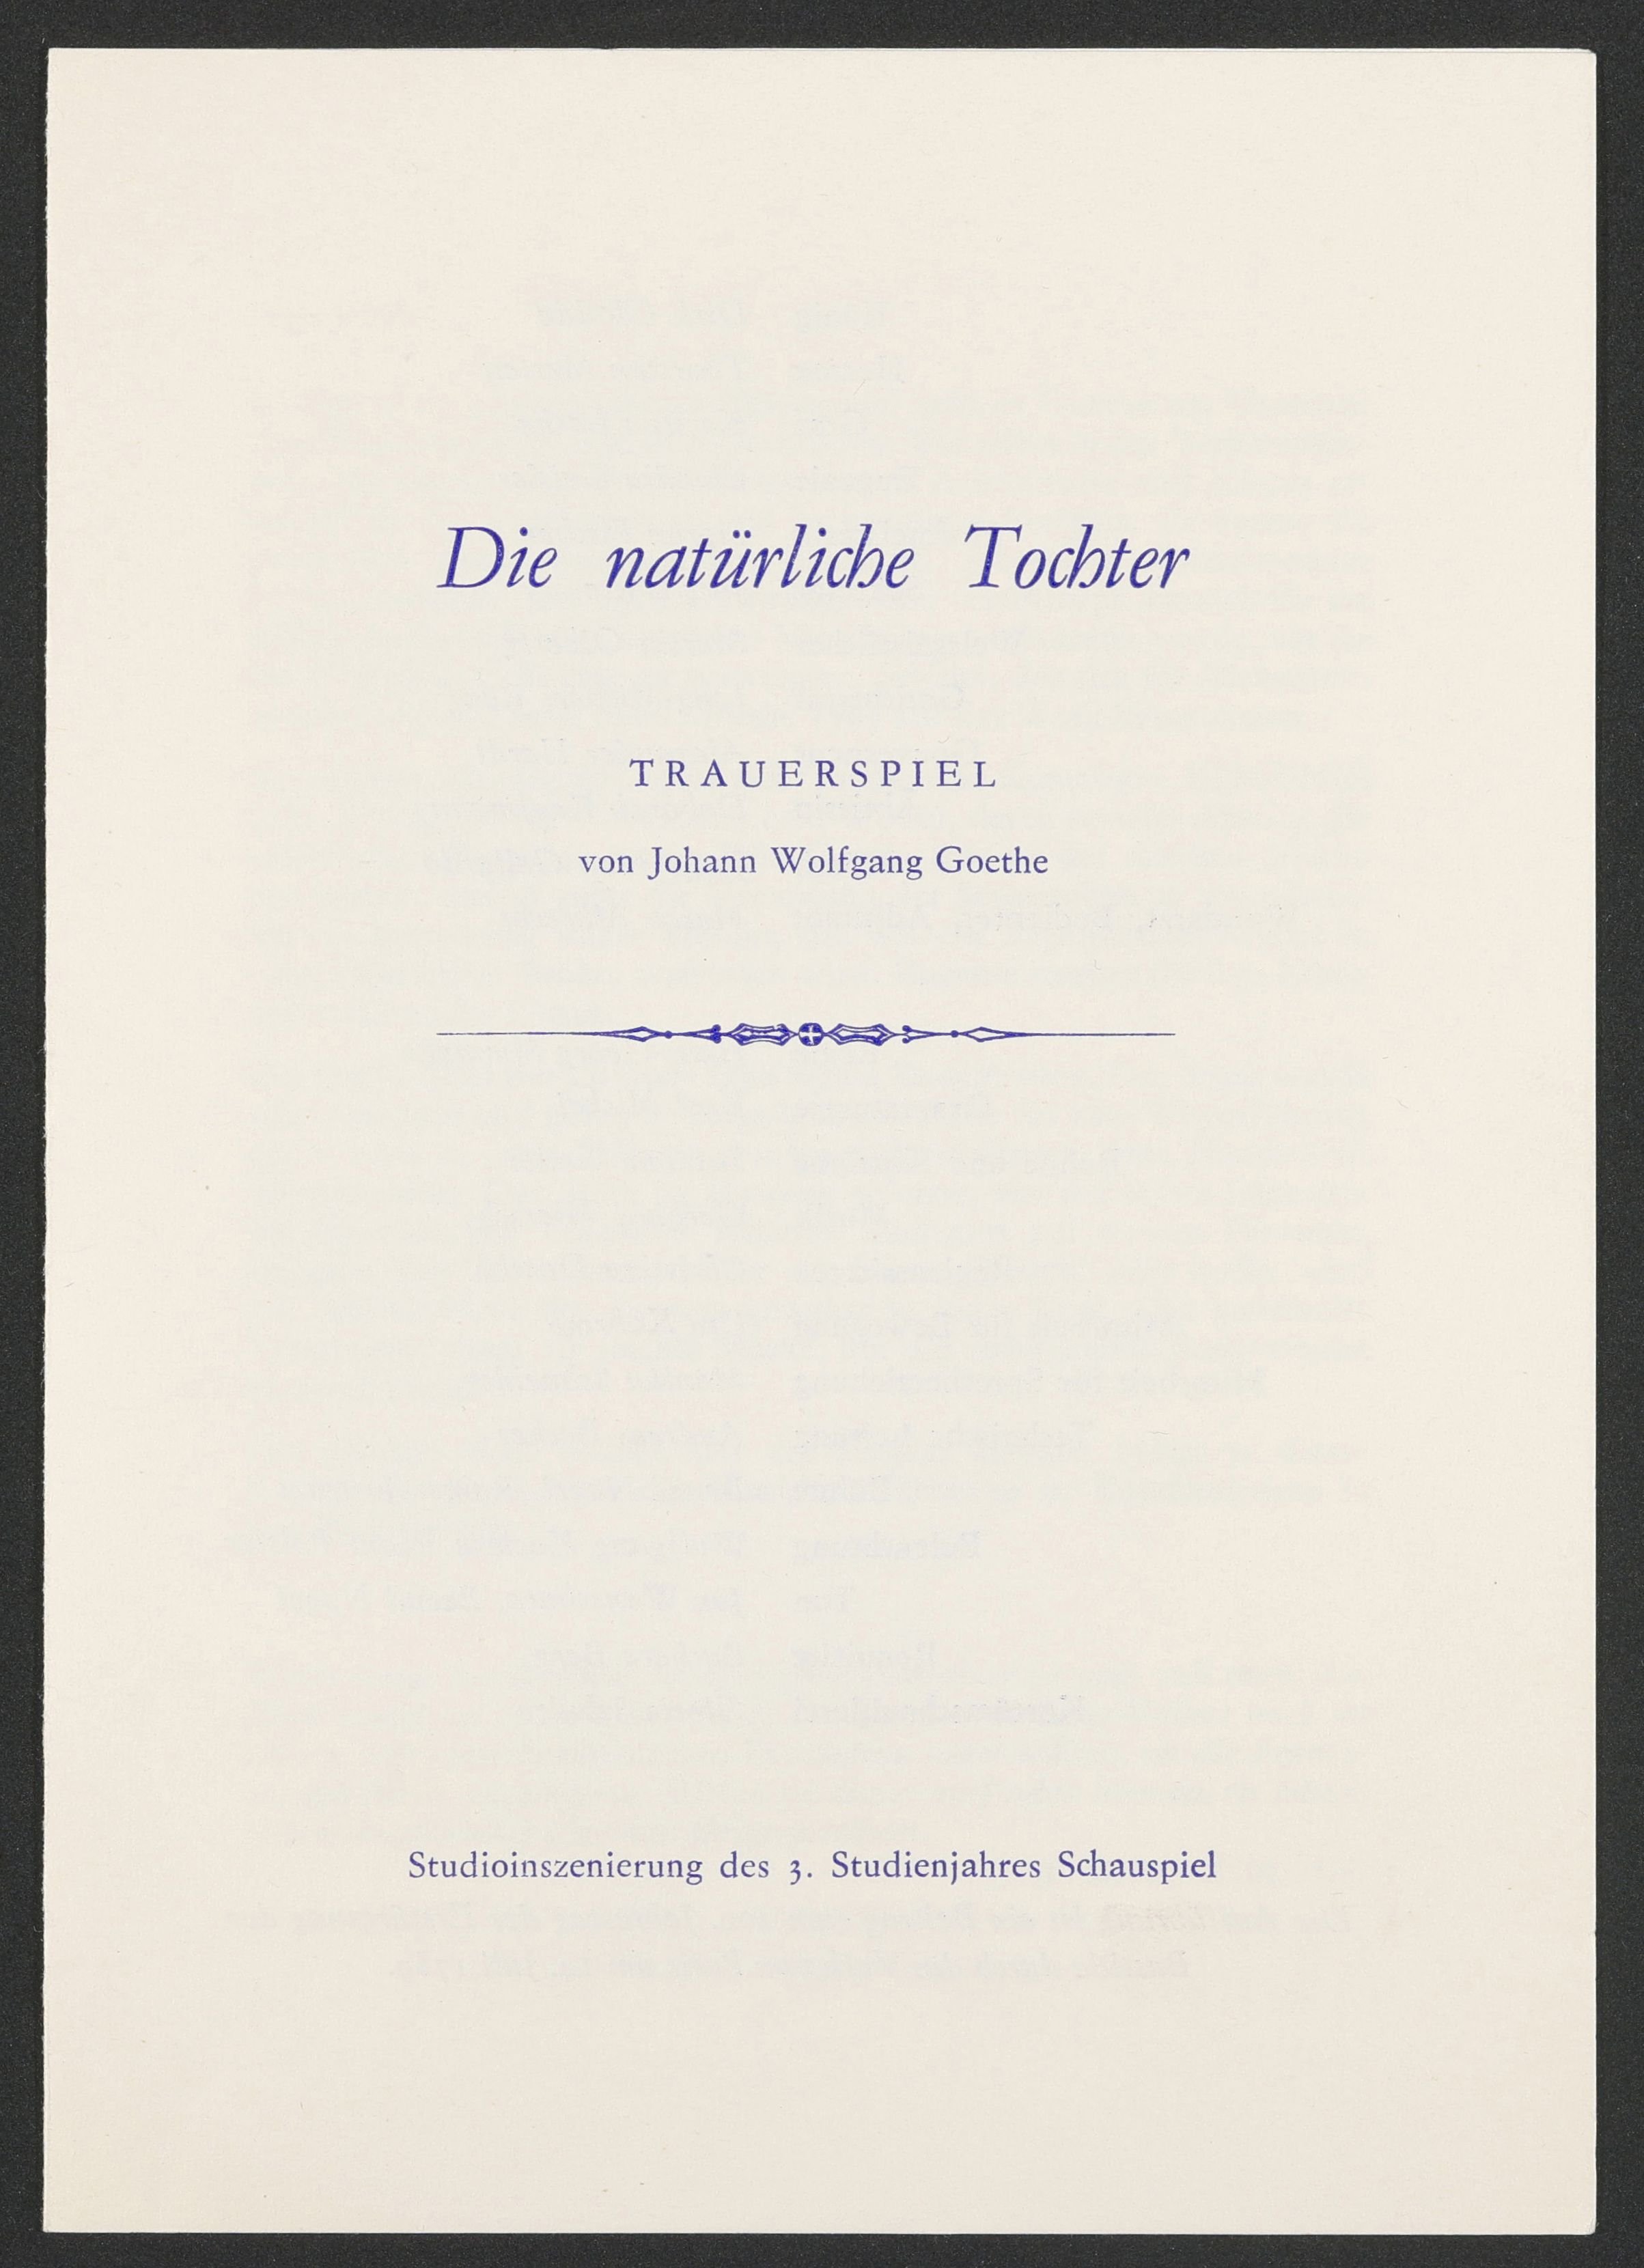 Programmheft zu "Die natürliche Tochter" am bat-Studiotheater 1989 (Hochschule für Schauspielkunst Ernst Busch Berlin RR-F)